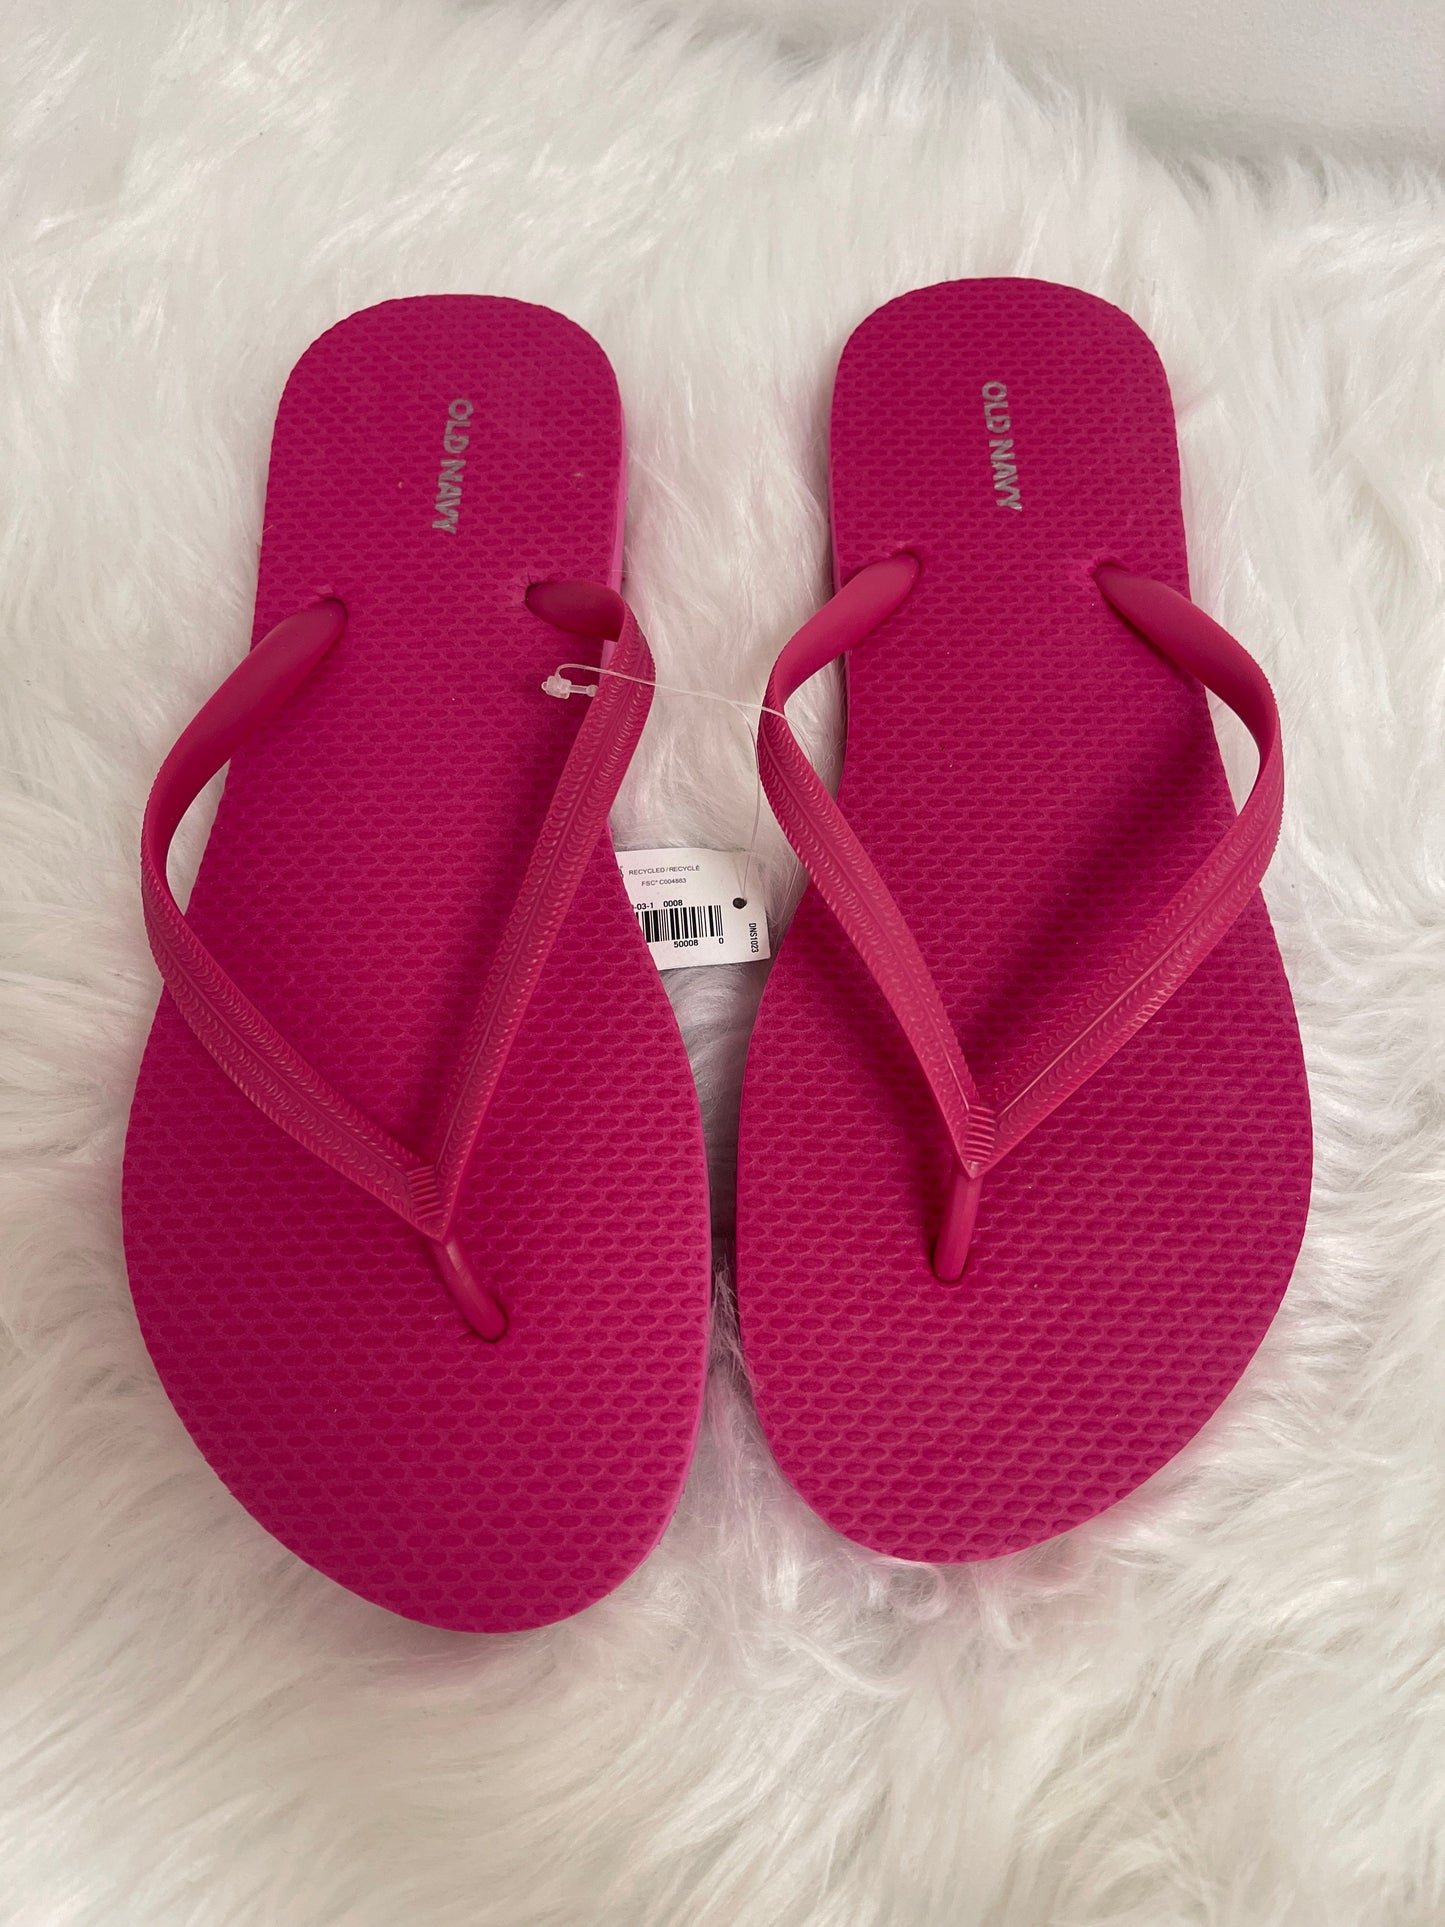 Pink Sandals Flip Flops Old Navy, Size 8